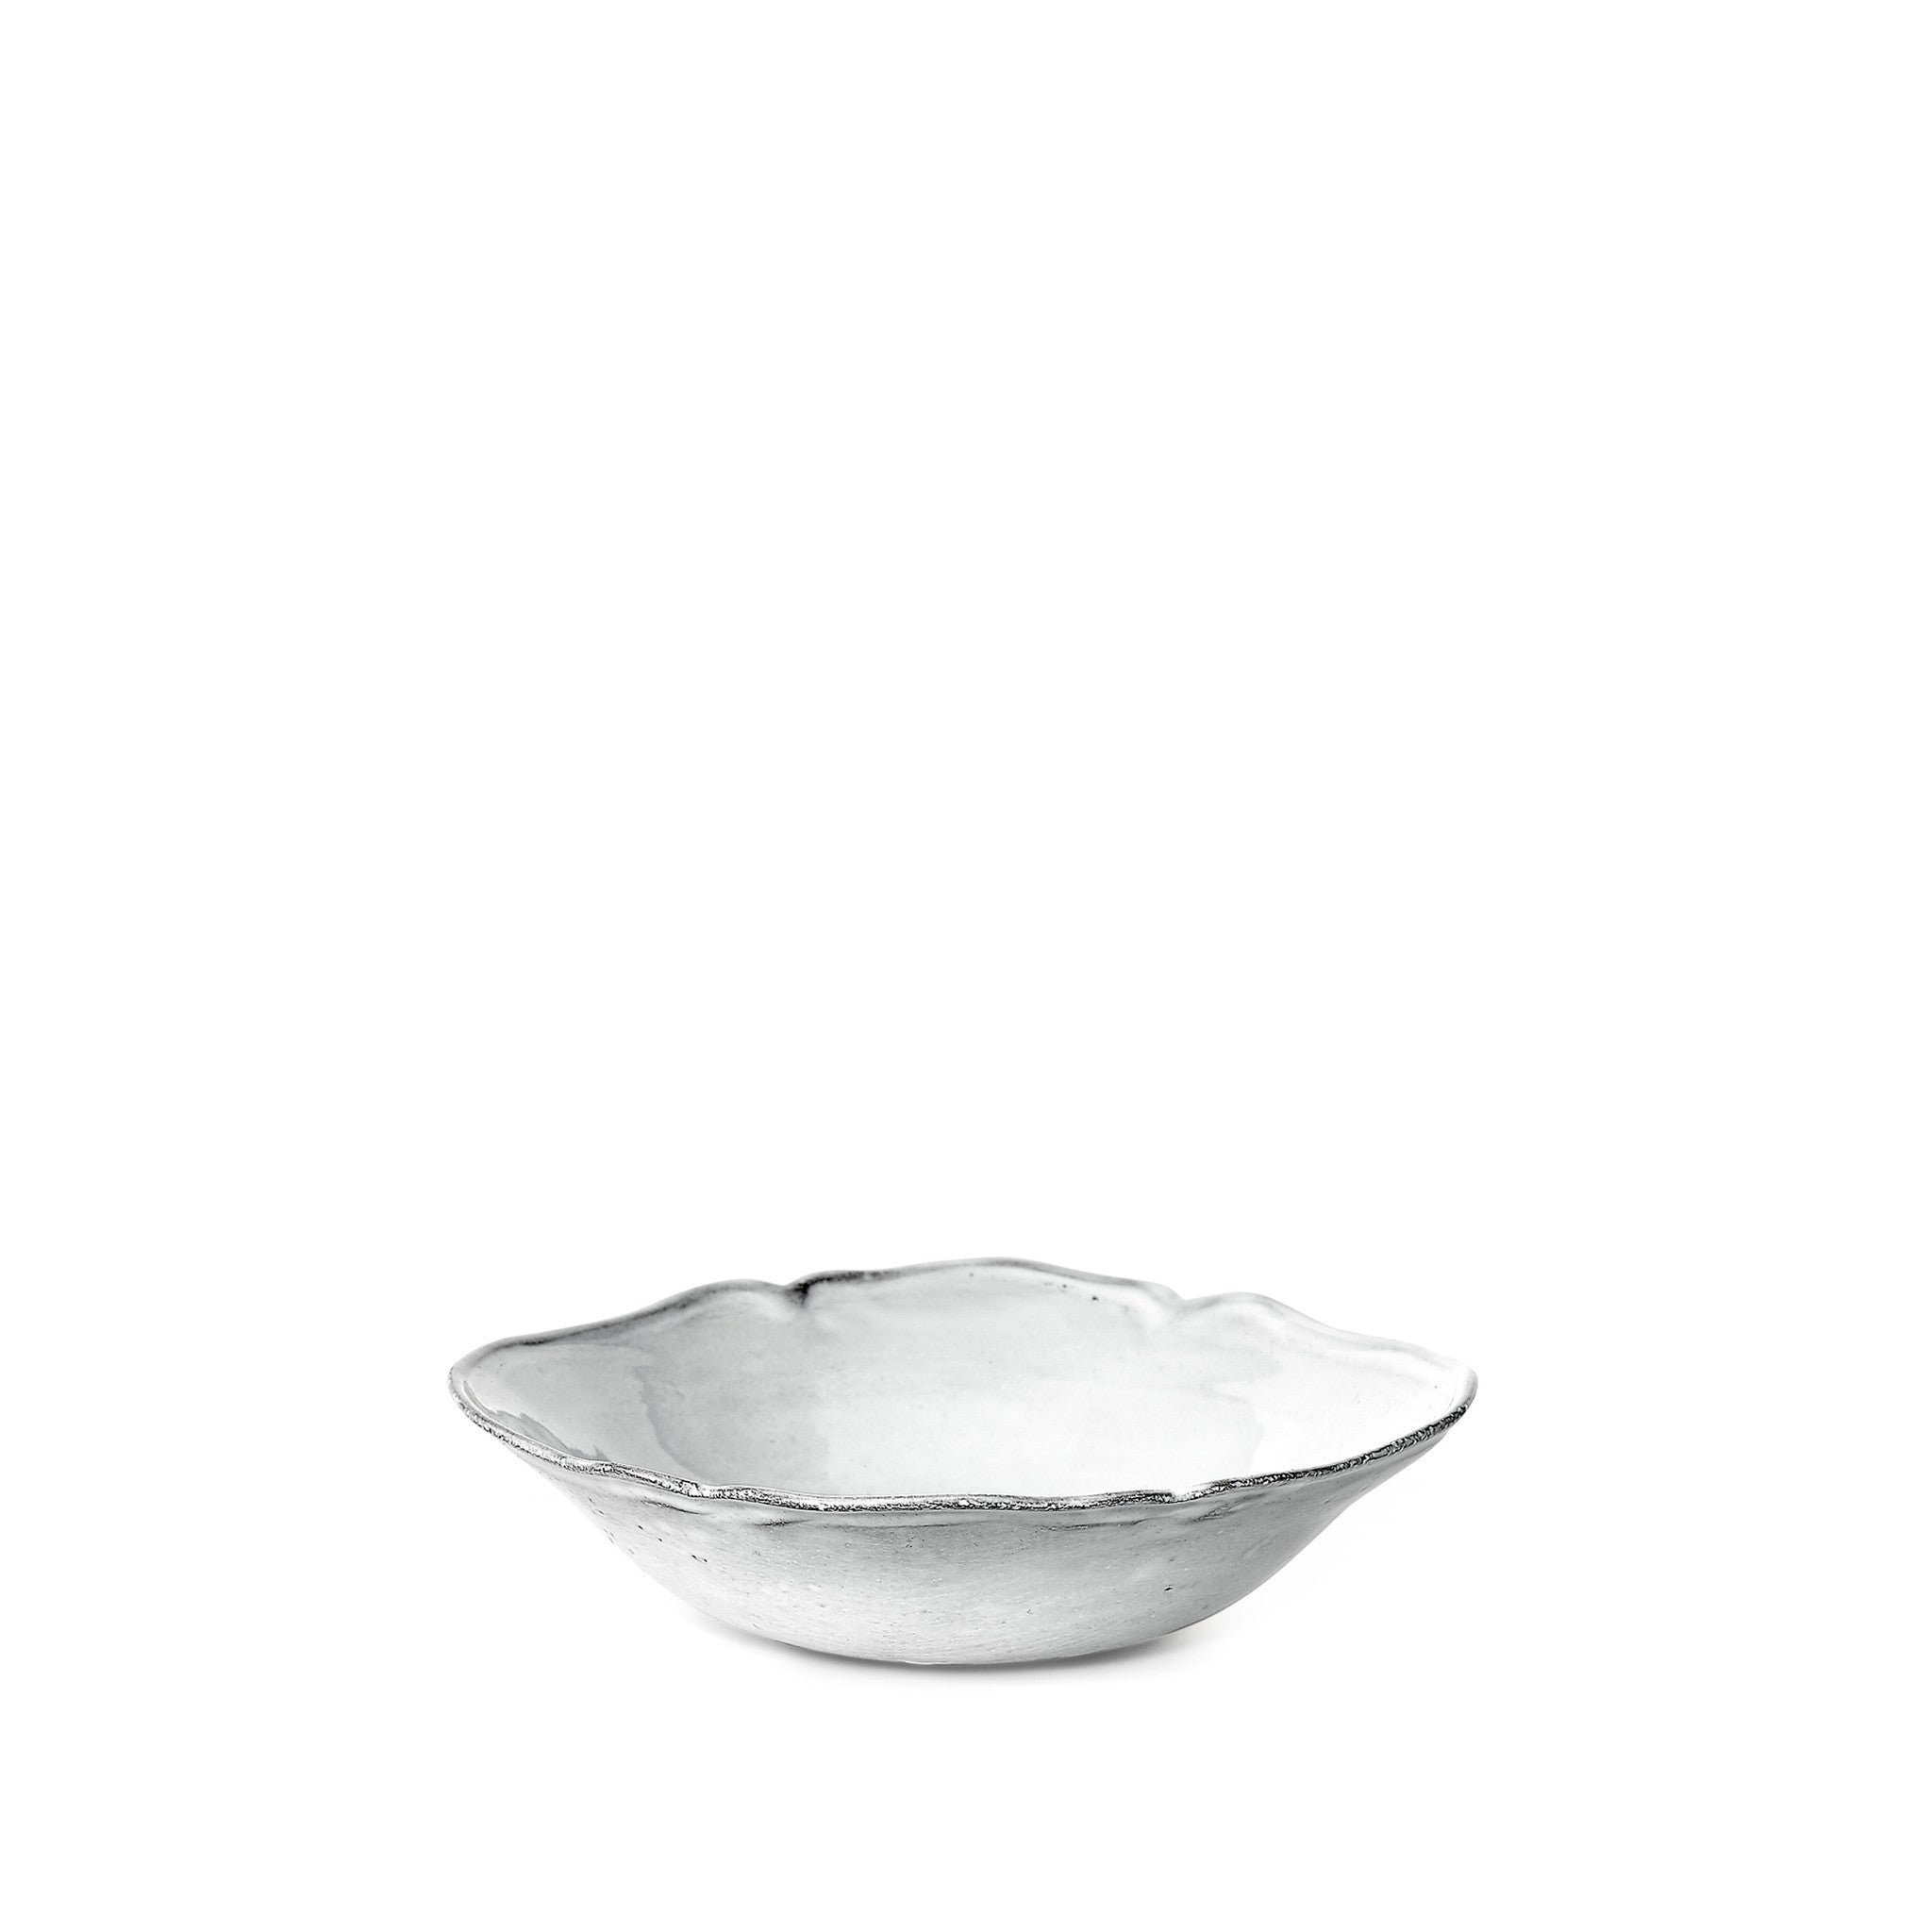 Bac Small Soup Bowl by Astier de Villatte, 19cm